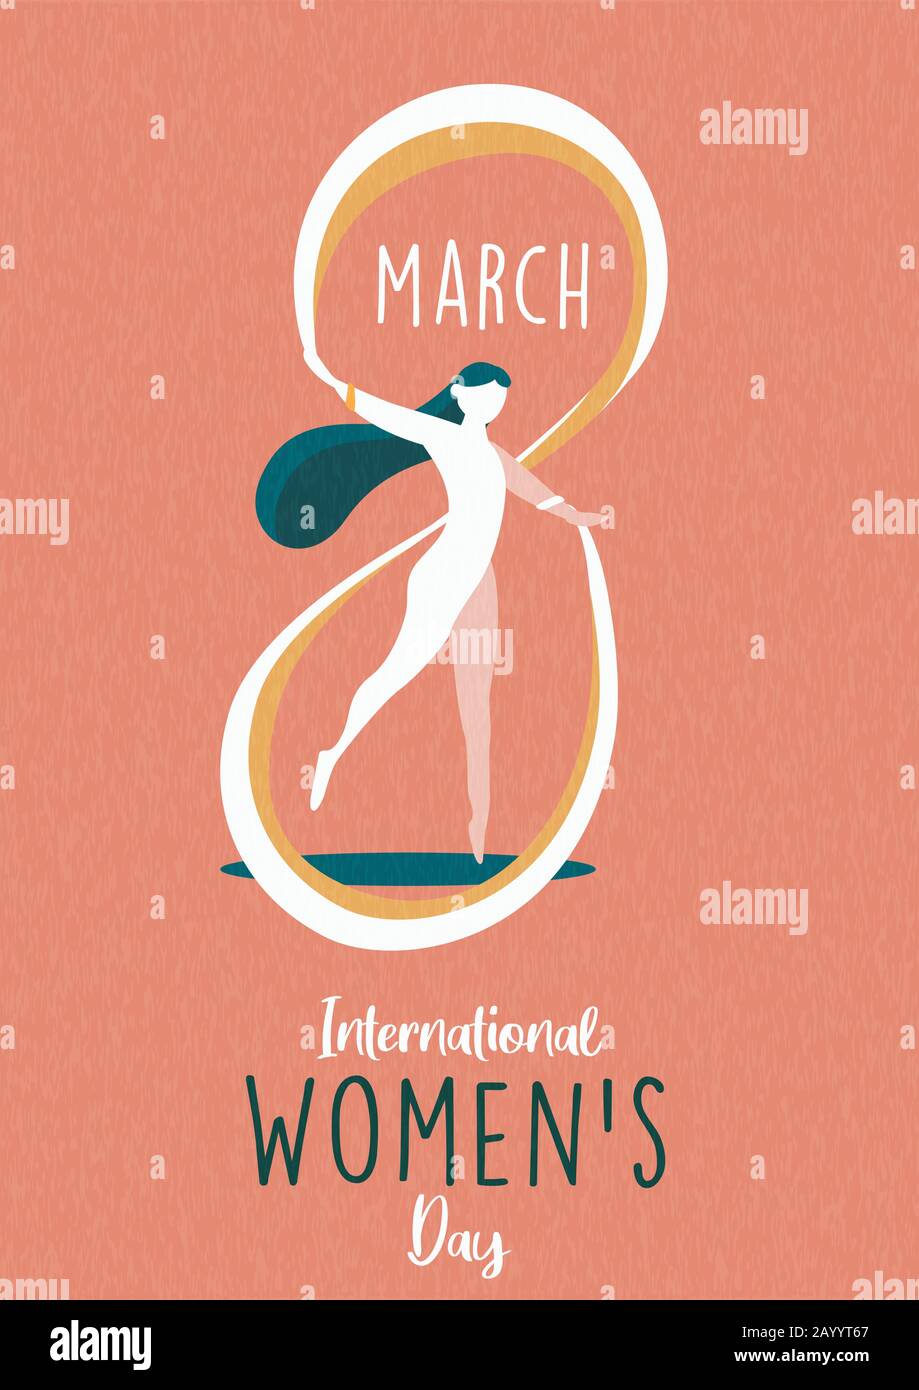 Internationale Grußkarte Für Den Frauentag Illustration der schönen Frau, die am 8. märz die Form der 8. Nummer für ein Event-Konzept für Gleichberechtigung oder einen Urlaub für Frauen erreicht hat Stock Vektor